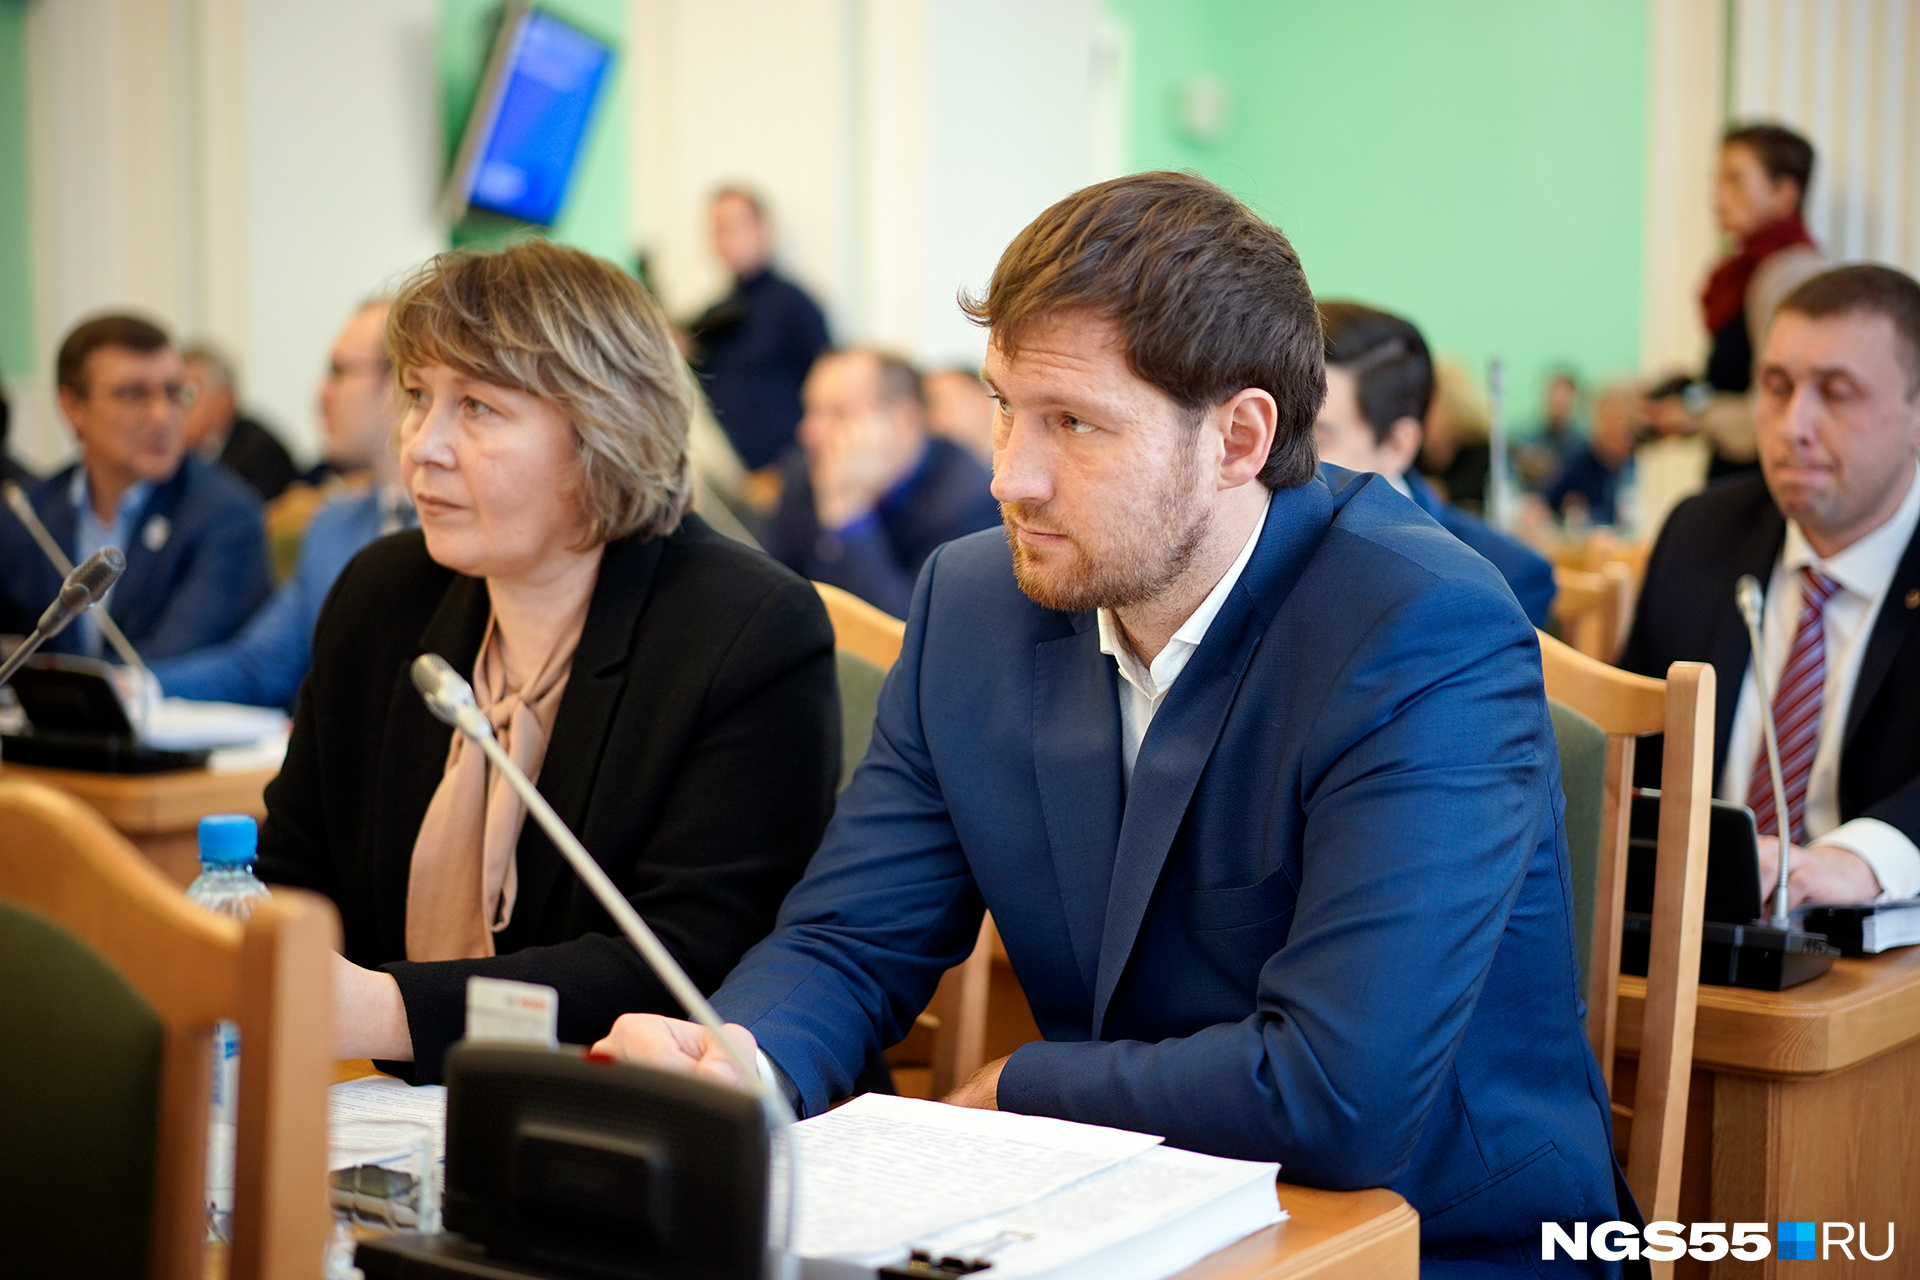 Экс-депутату горсовета Петренко запросили 9 лет колонии по делу о фейках